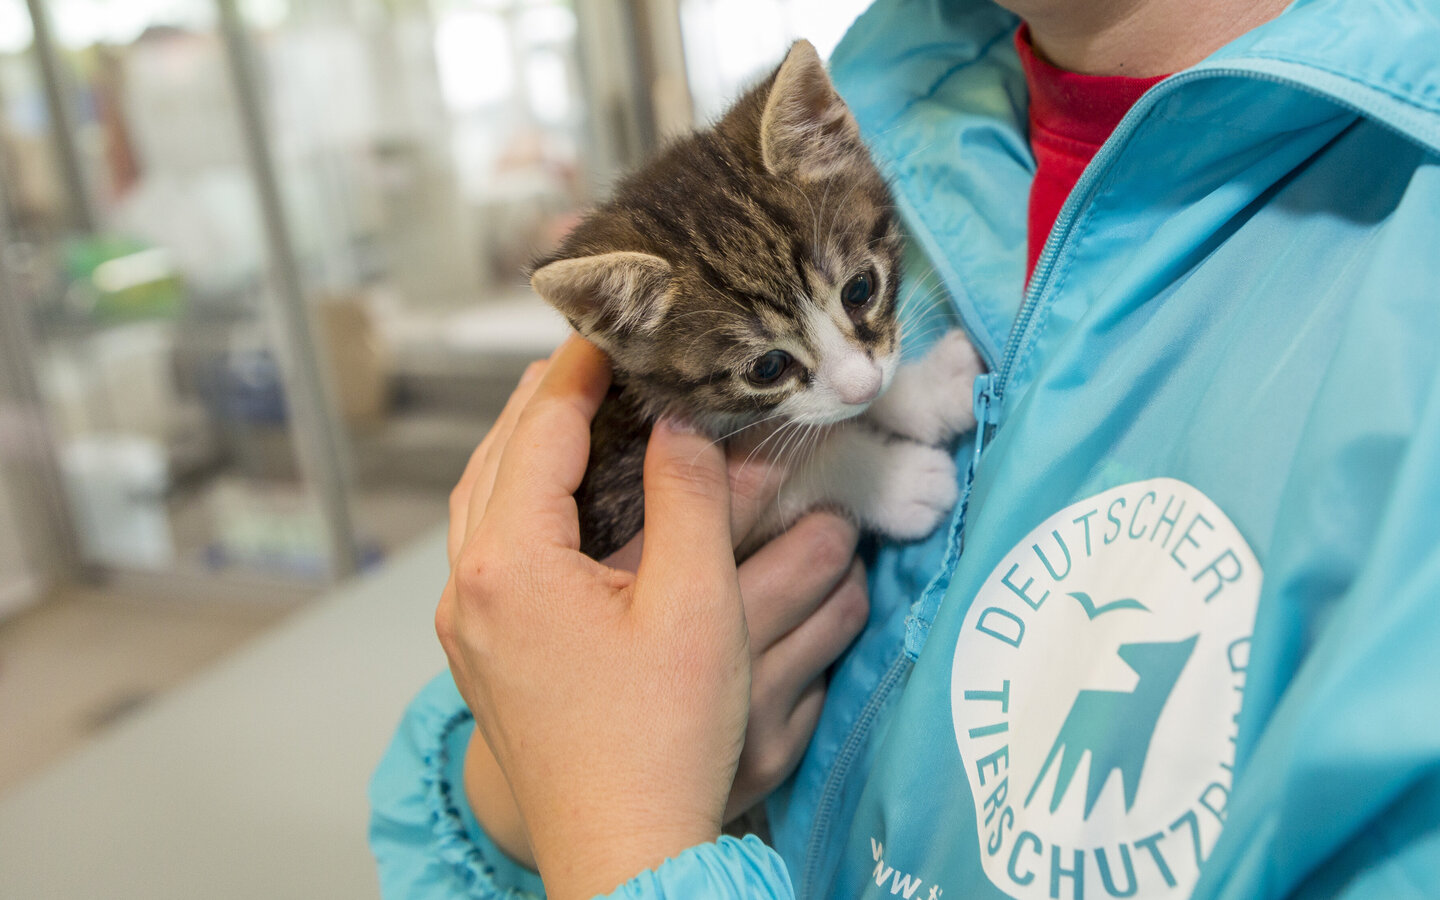 Kitten auf dem Arm von einer Person die eine Regenjacke mit dem Tierschutzbund Logo trägt.